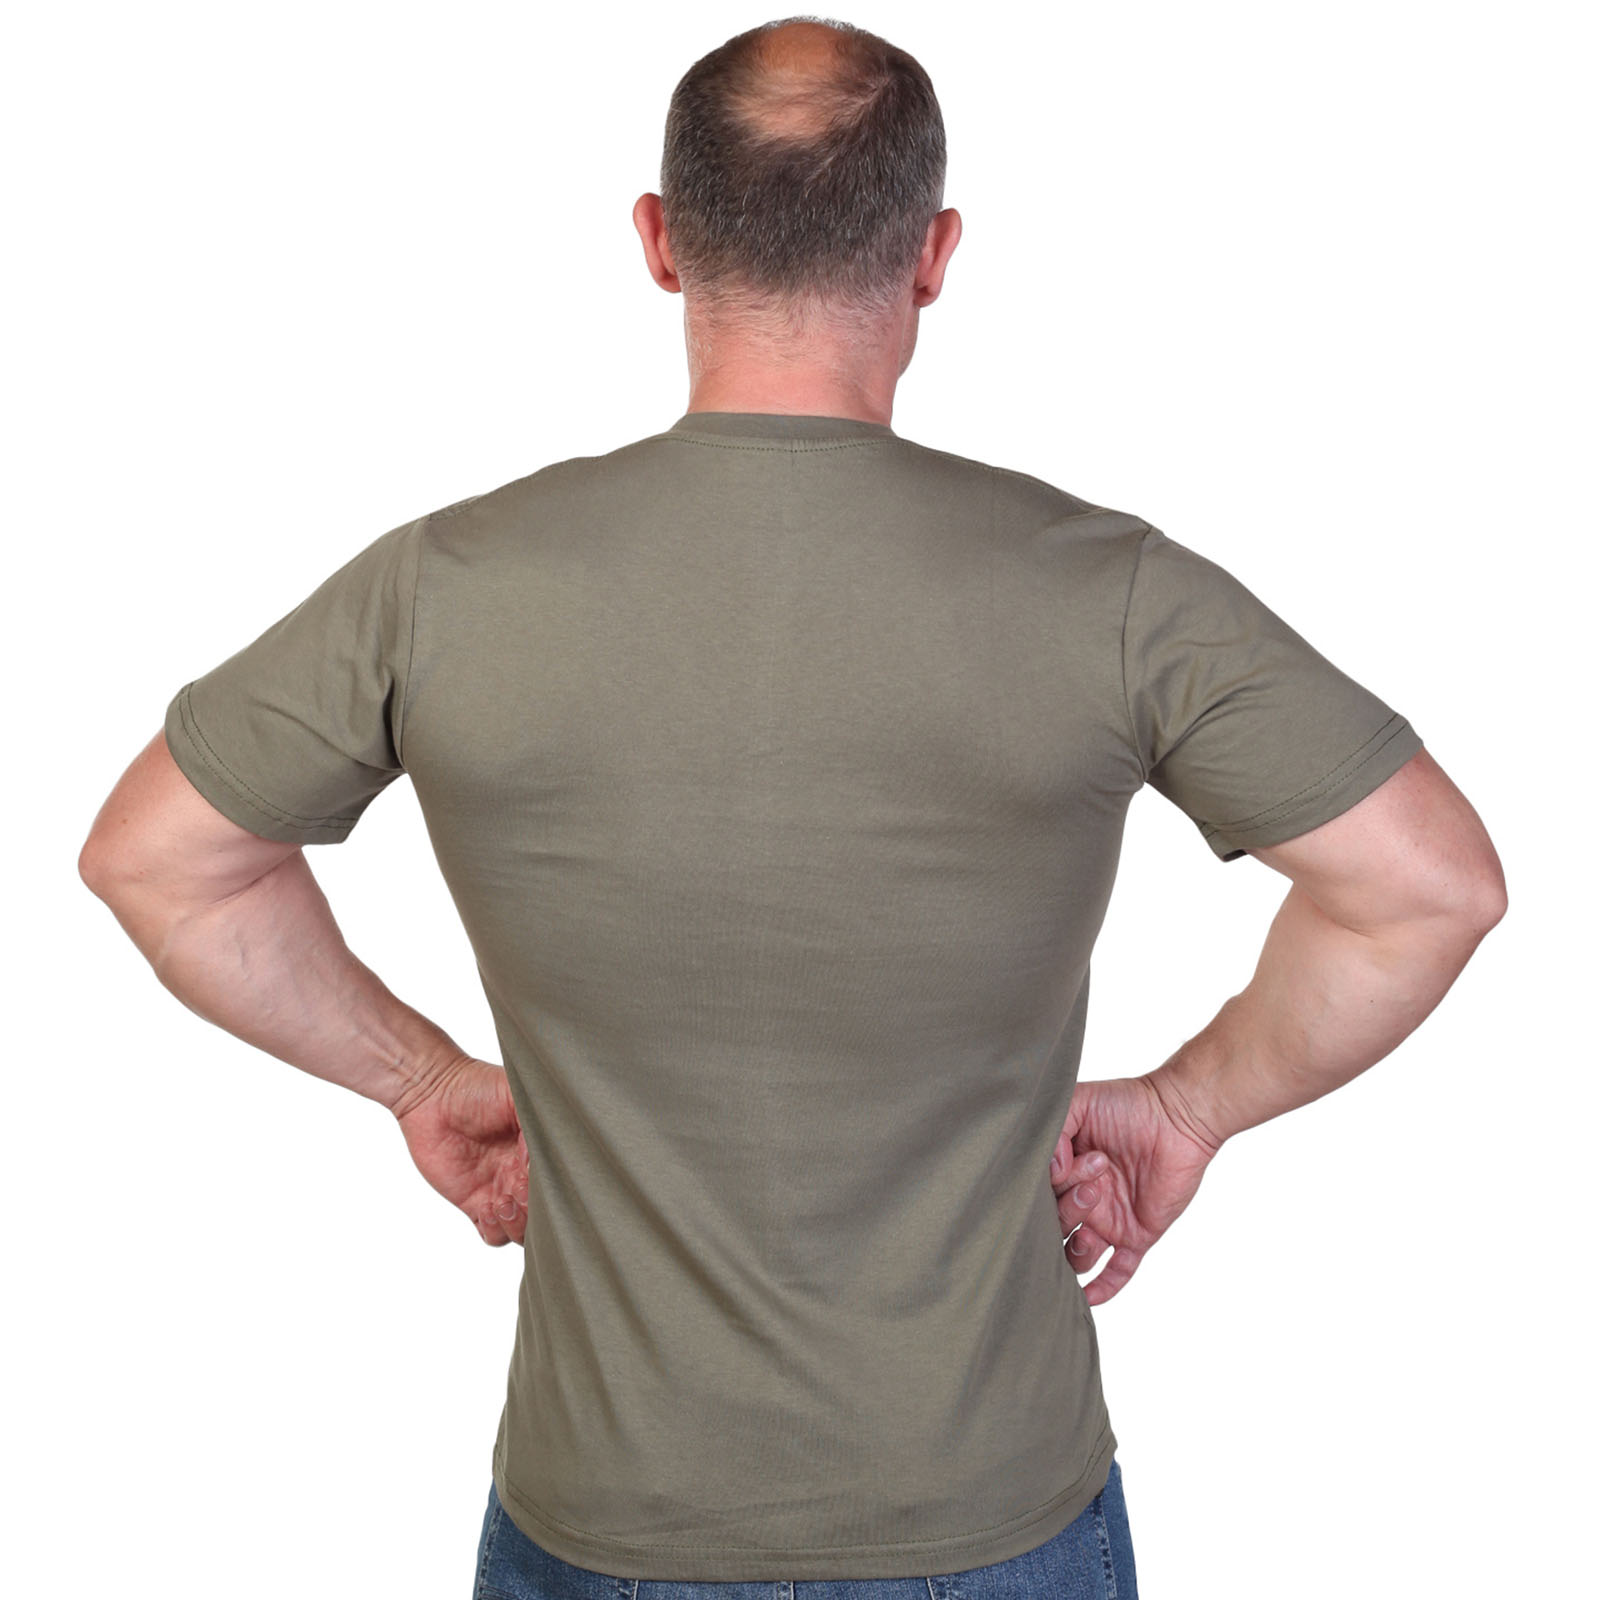 Оливковая футболка с термотрансфером "Военная разведка" 